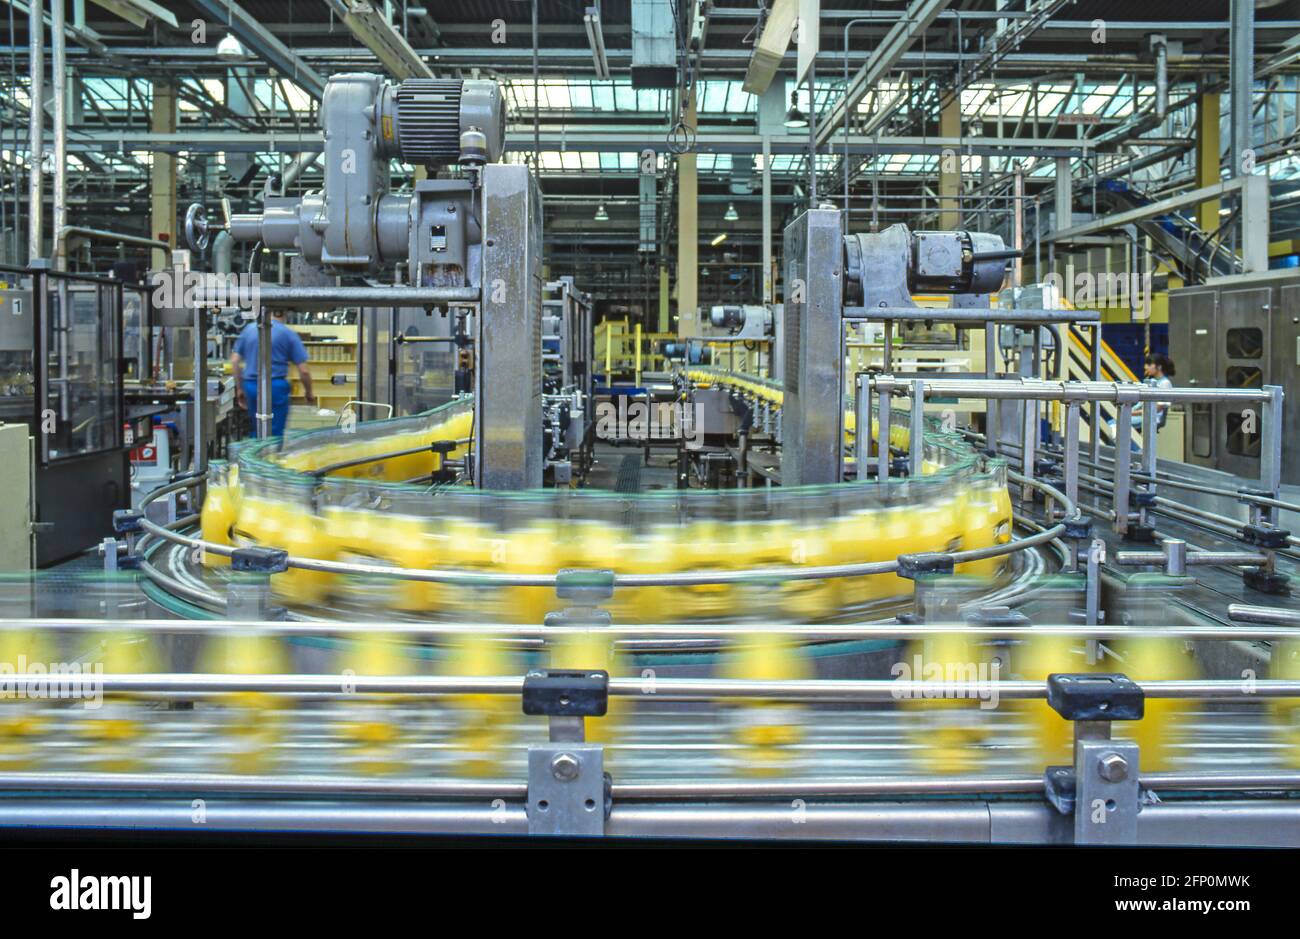 Machines fonctionnant avec un tapis transporteur de type chaîne d'assemblage de production de masse automatisée les bouteilles en verre à boisson douce sont floues à l'intérieur de l'usine Angleterre Royaume-Uni Banque D'Images